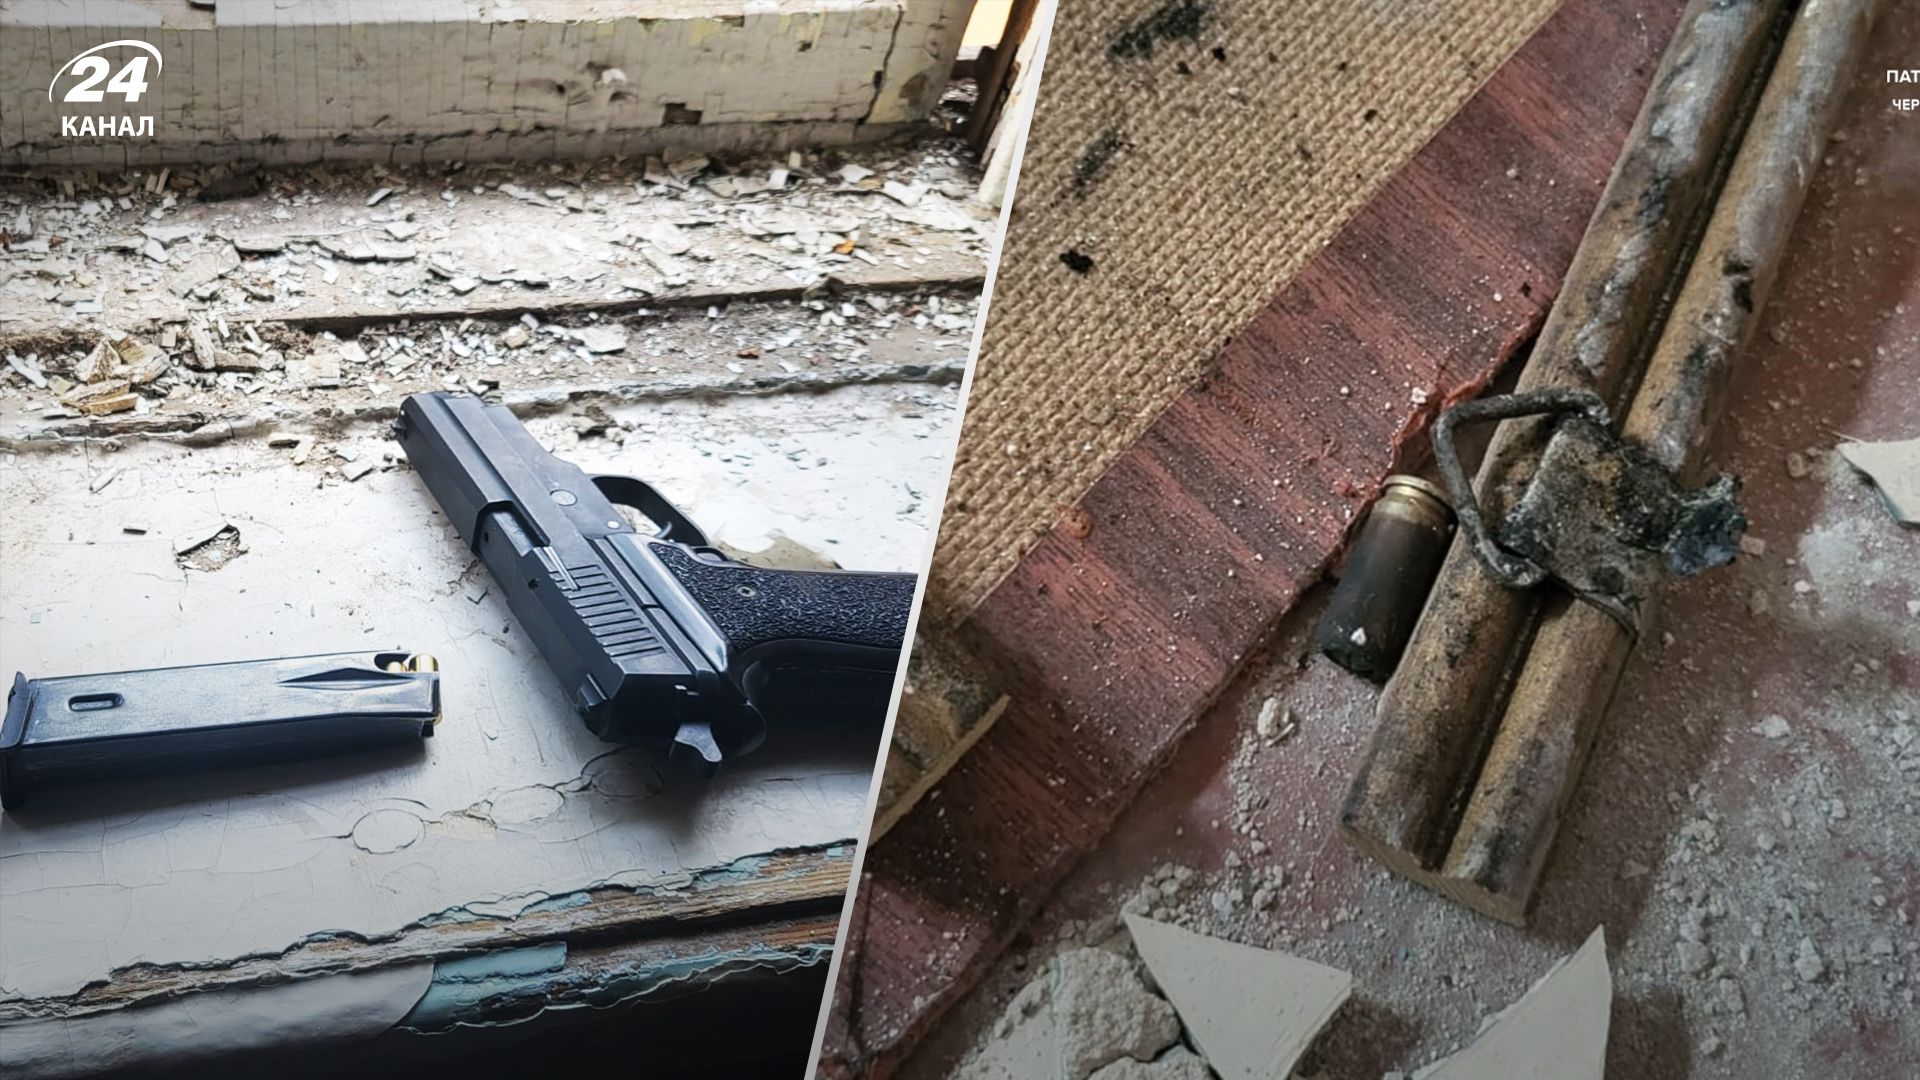 У Чернігові п'яний чоловік погрожував зброєю та вдарив неповнолітнього - 24 Канал